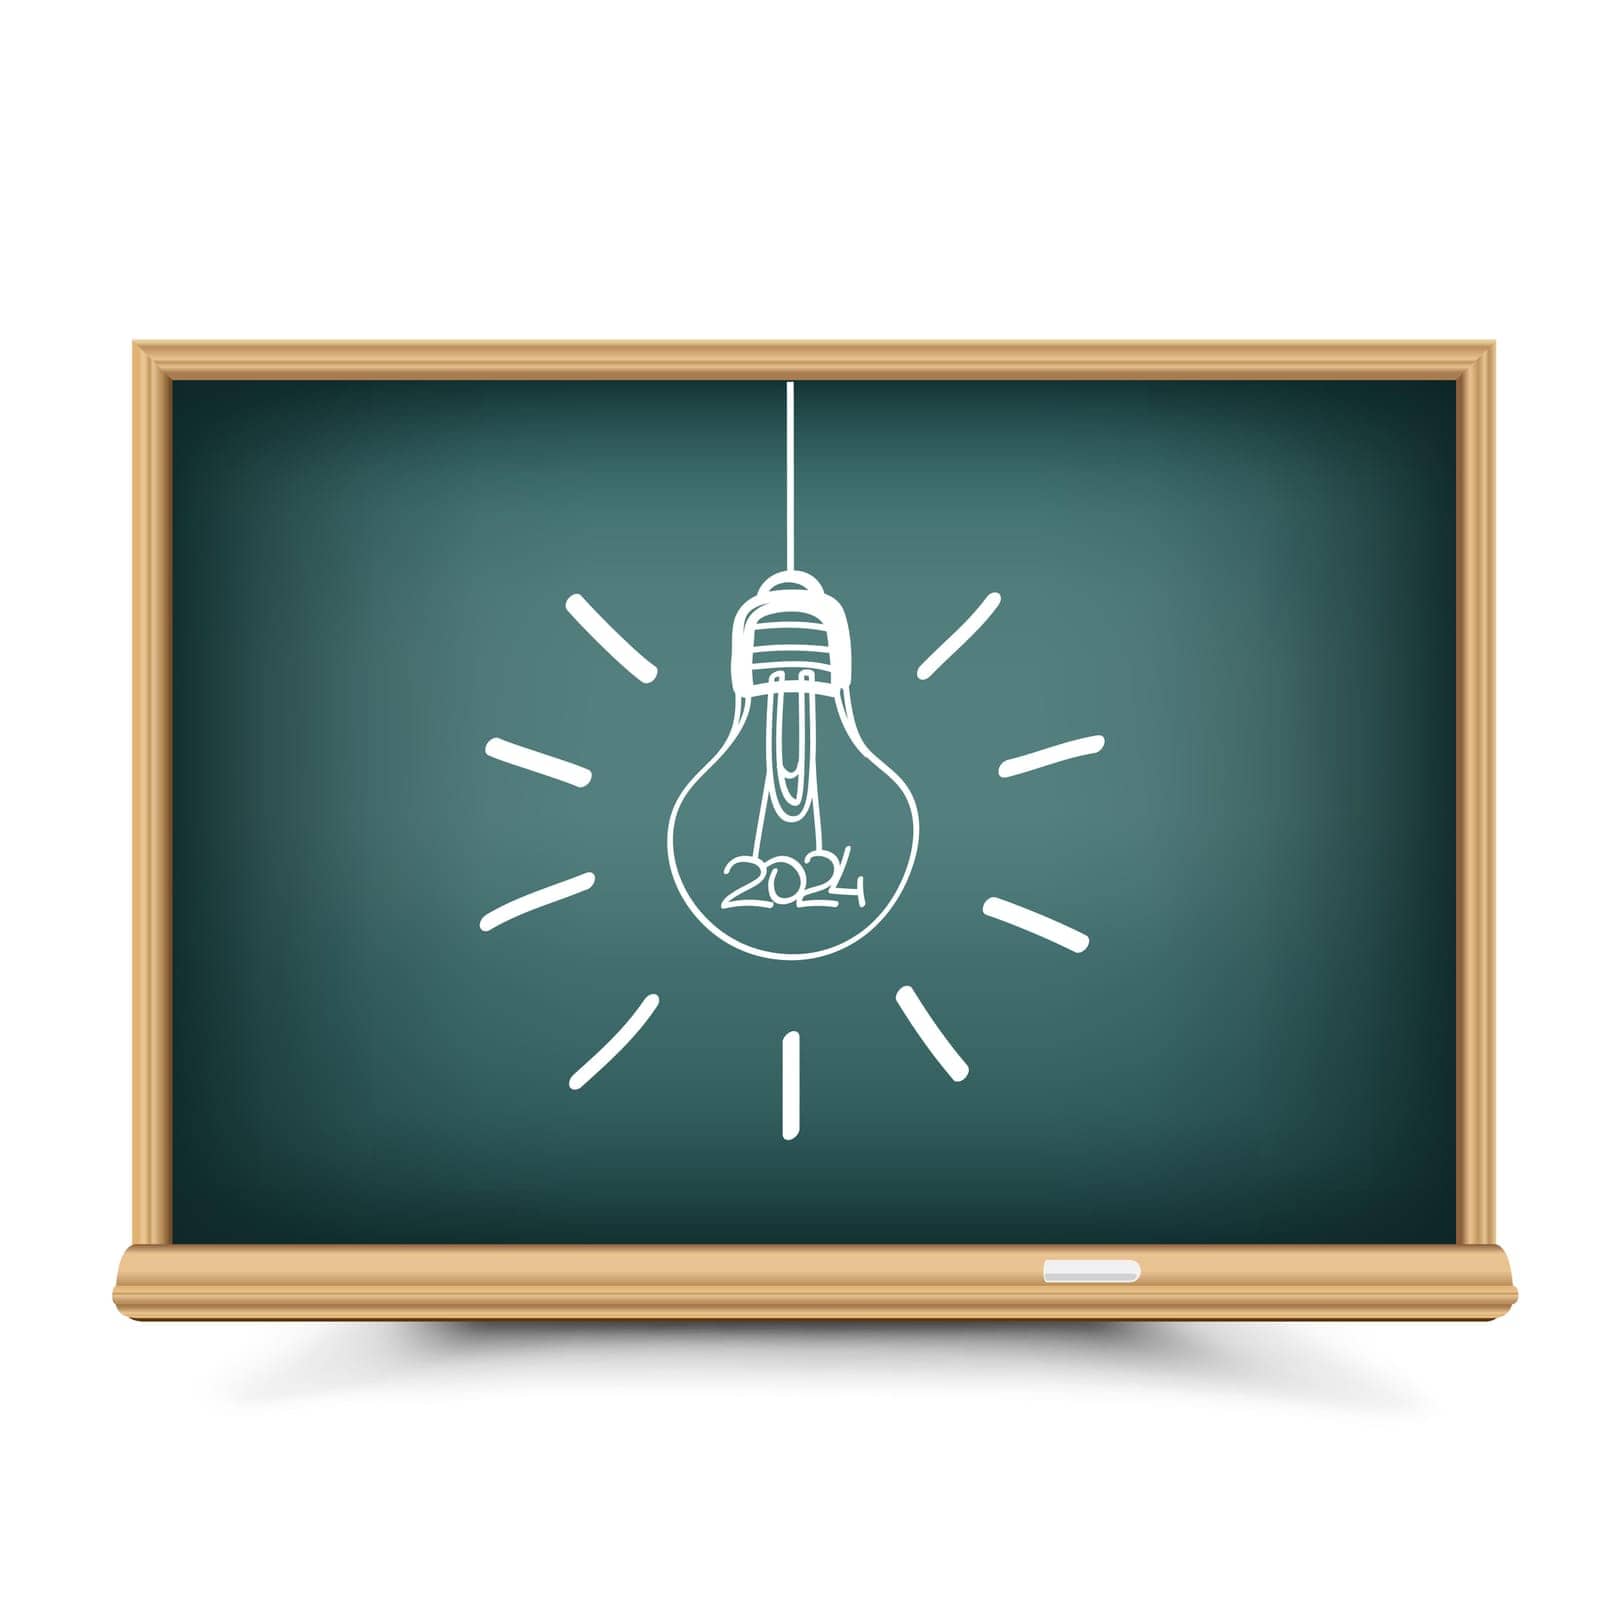 Education idea lightbulb lamp on school blackboard. Chalkboard drawing of light lamp